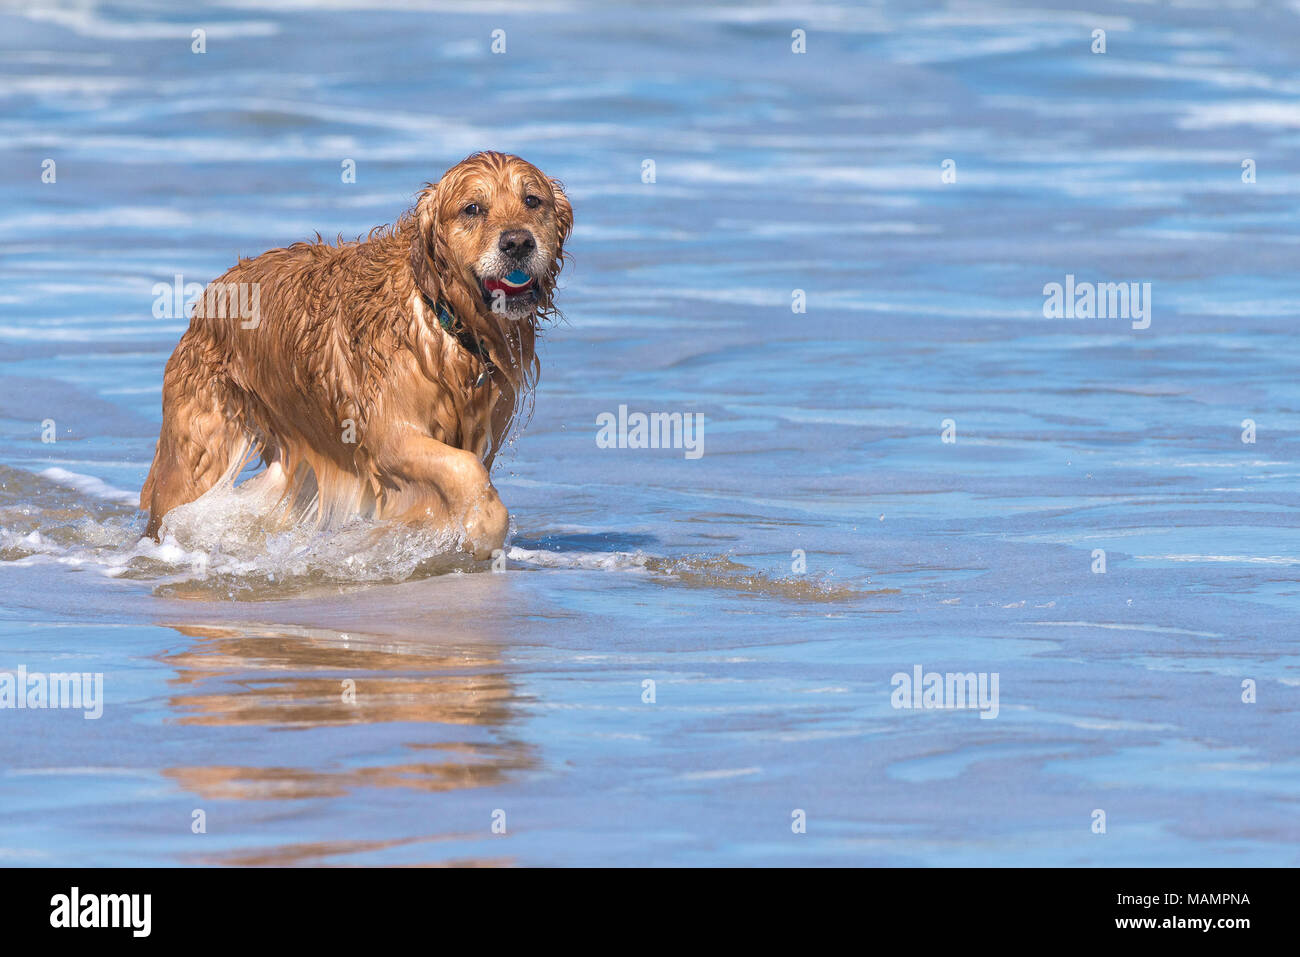 A Golden Retriever retrieving a ball from the sea. Stock Photo